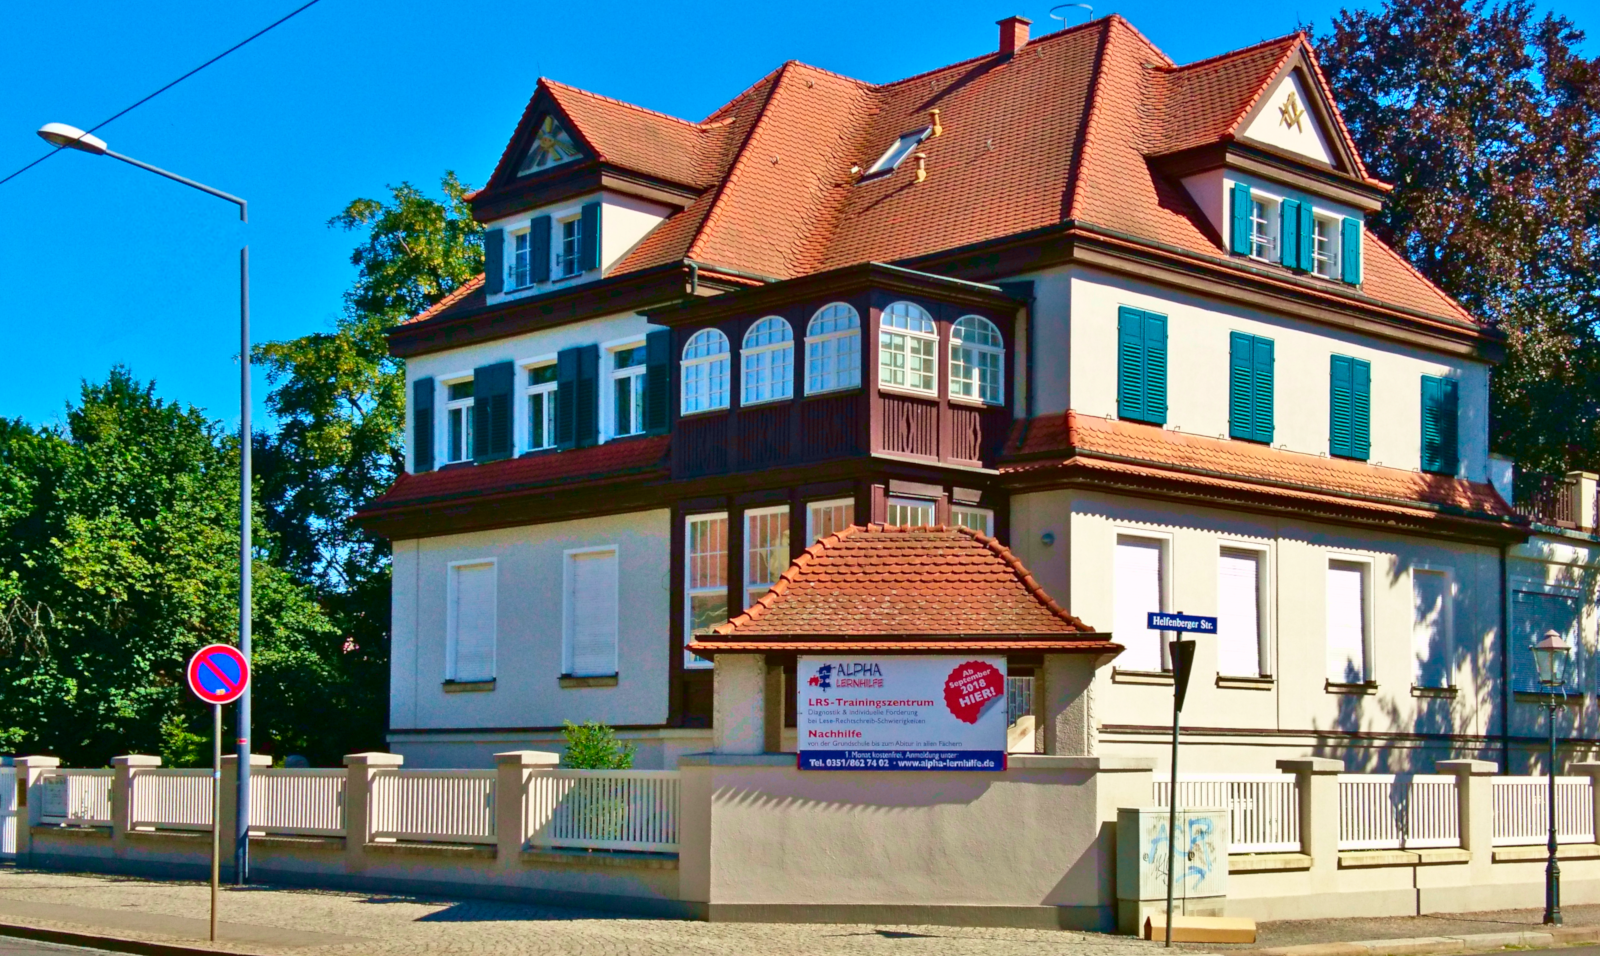 Der neue Standort der Alpha Lernhilfe in Blasewitz (Nähe Blaues Wunder)